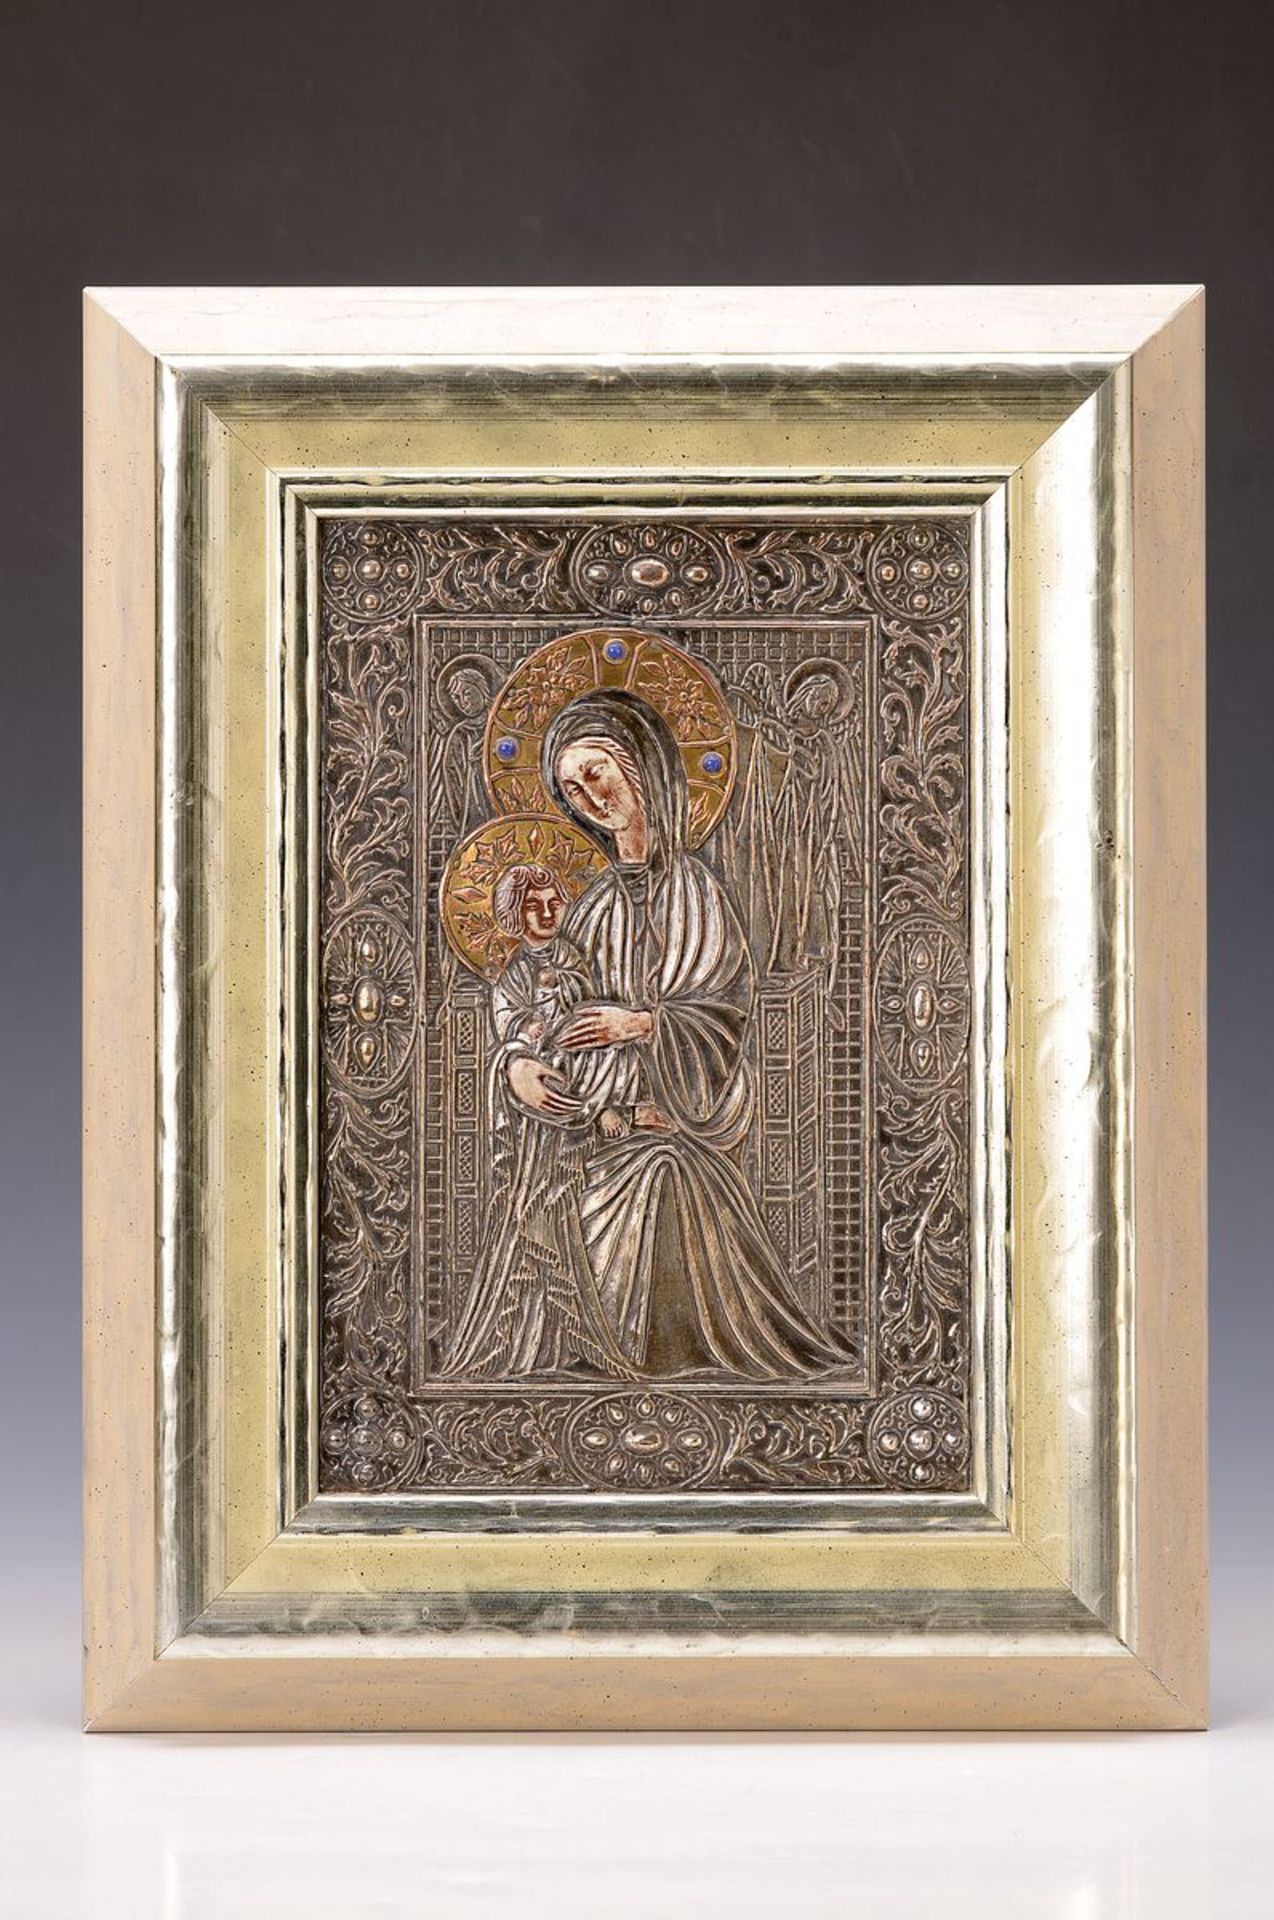 Ikone mit Silberoklad, 20. Jh., Italien, Hände und Gesichter aus Keramik, wohl Silberoklad, geprägt, - Bild 2 aus 2